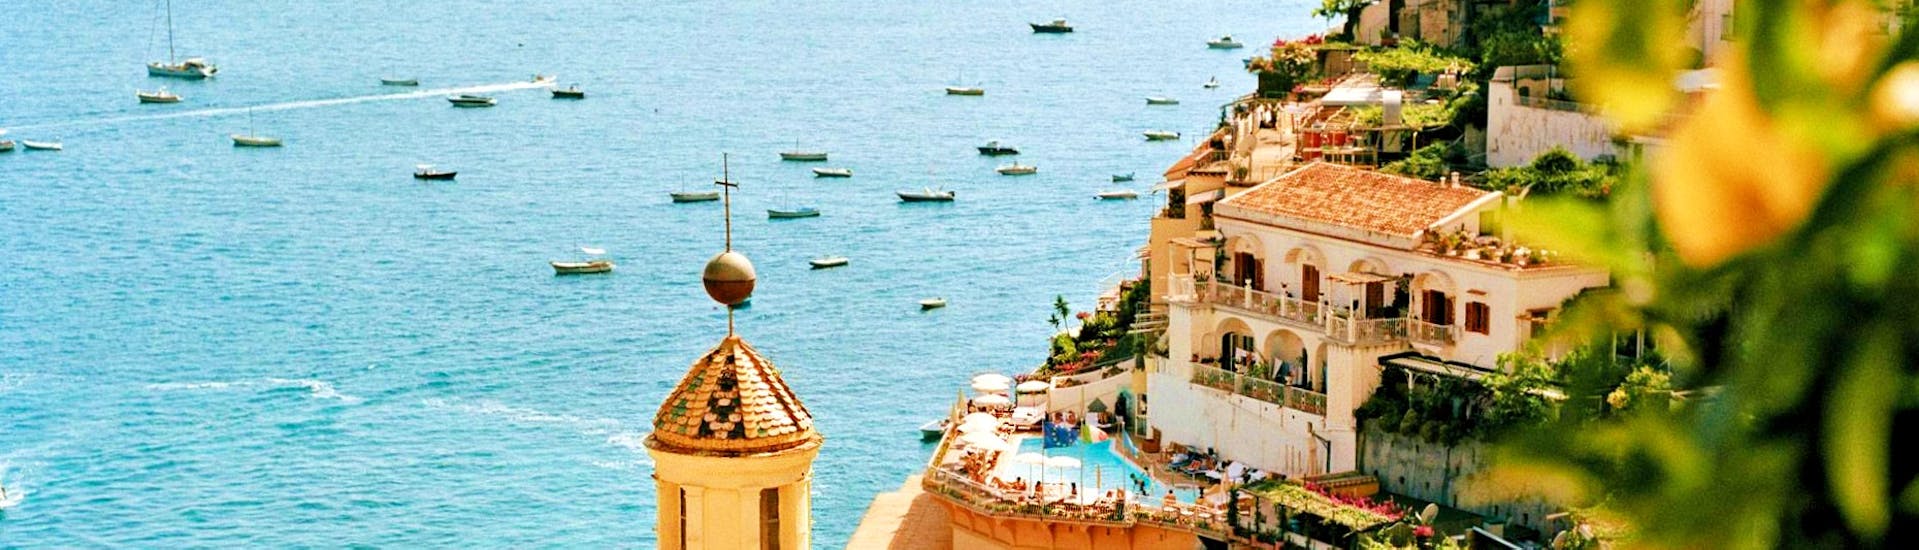 Blick auf das Meer und den Hügel in Positano, der während der Bootstour zur Sorrentinischen Küste und nach Positano & Amalfi mit HP Travel besucht werden kann.